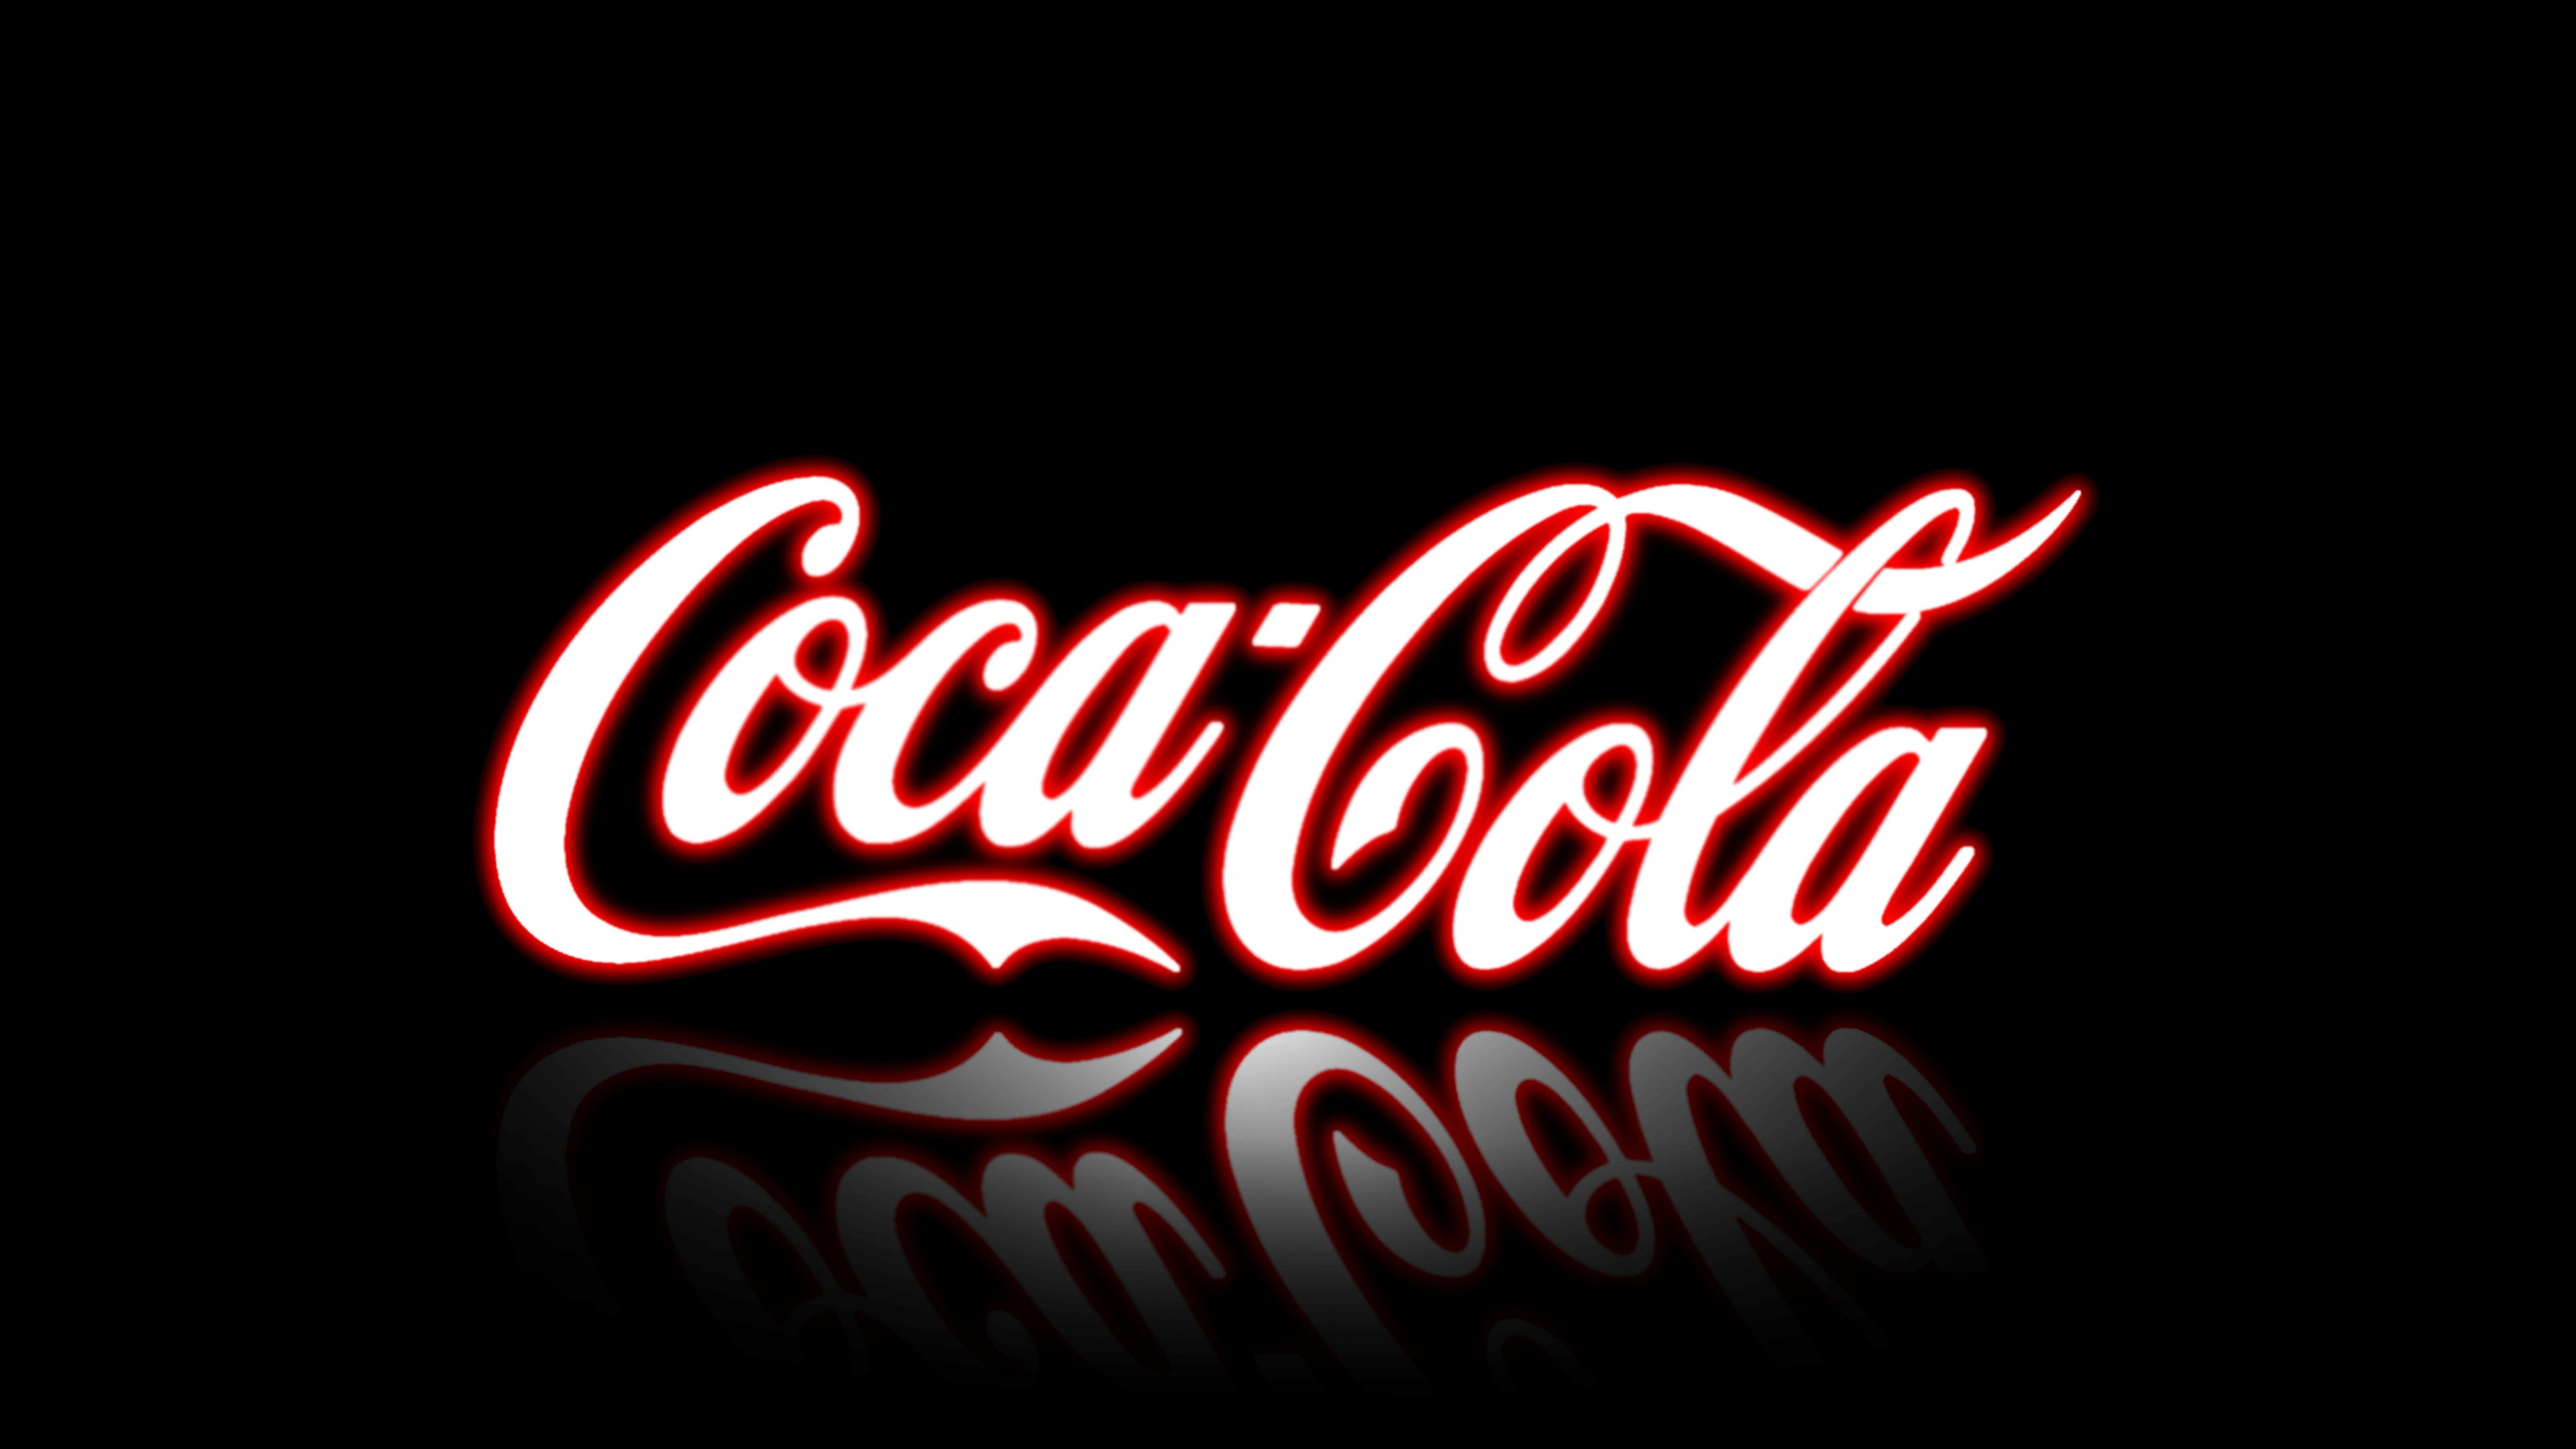 Coca Cola Image for PC HD Wallpaper